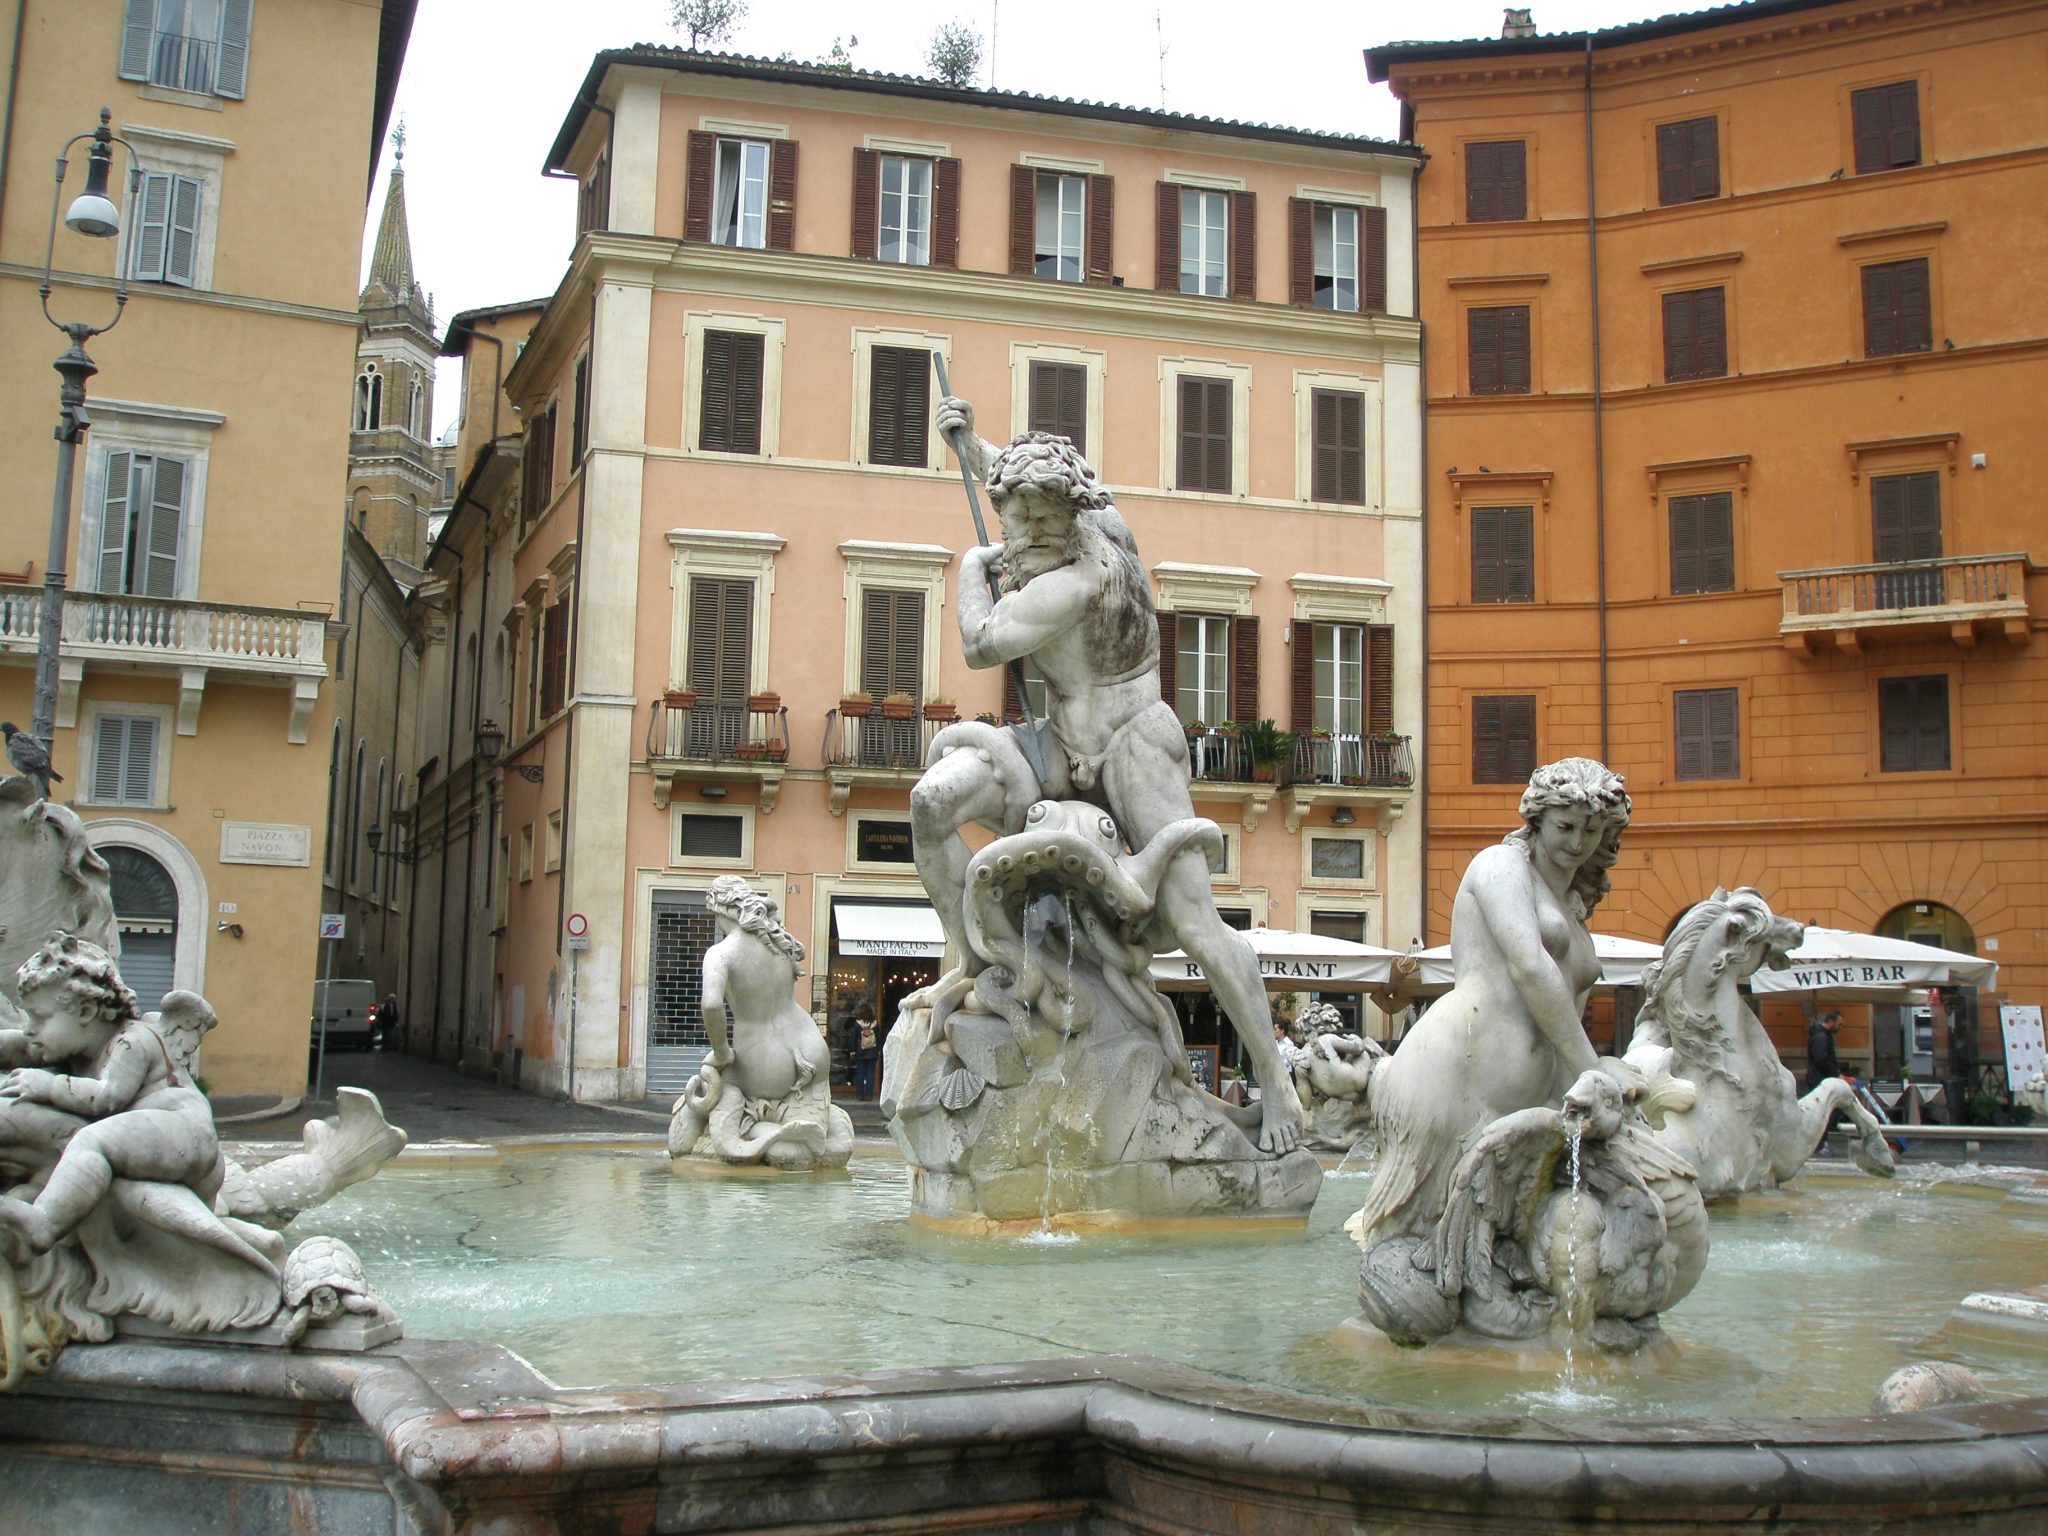 Fontana del Nettuno. Begun in 1574, completed in 1878.